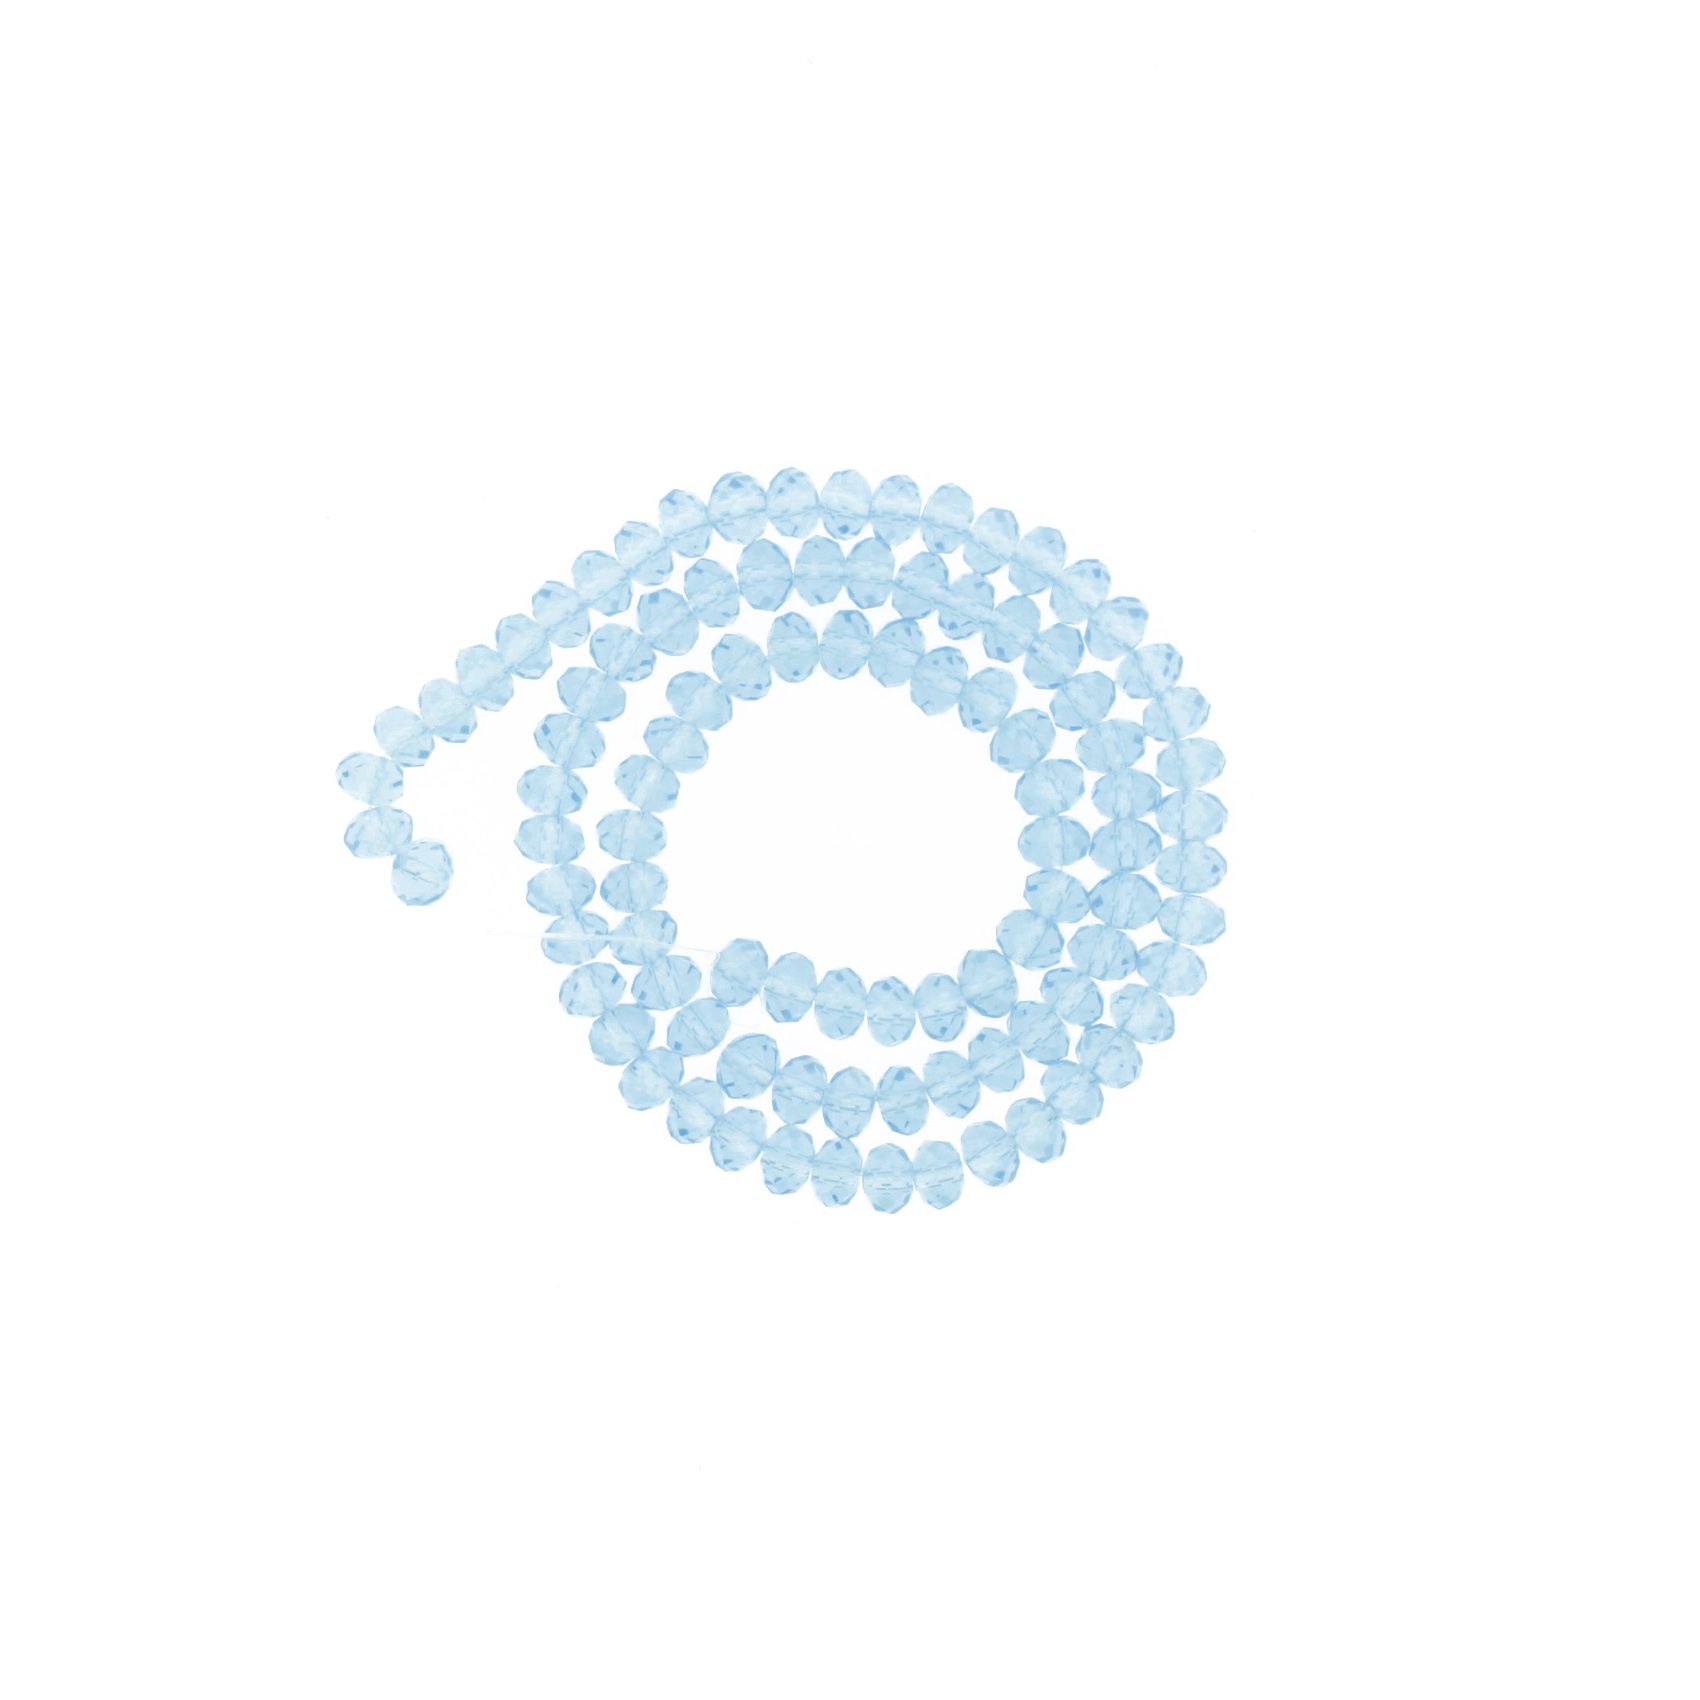 Fio de Cristal - Flat® - Azul Claro Transparente - 6mm - Stéphanie Bijoux® - Peças para Bijuterias e Artesanato